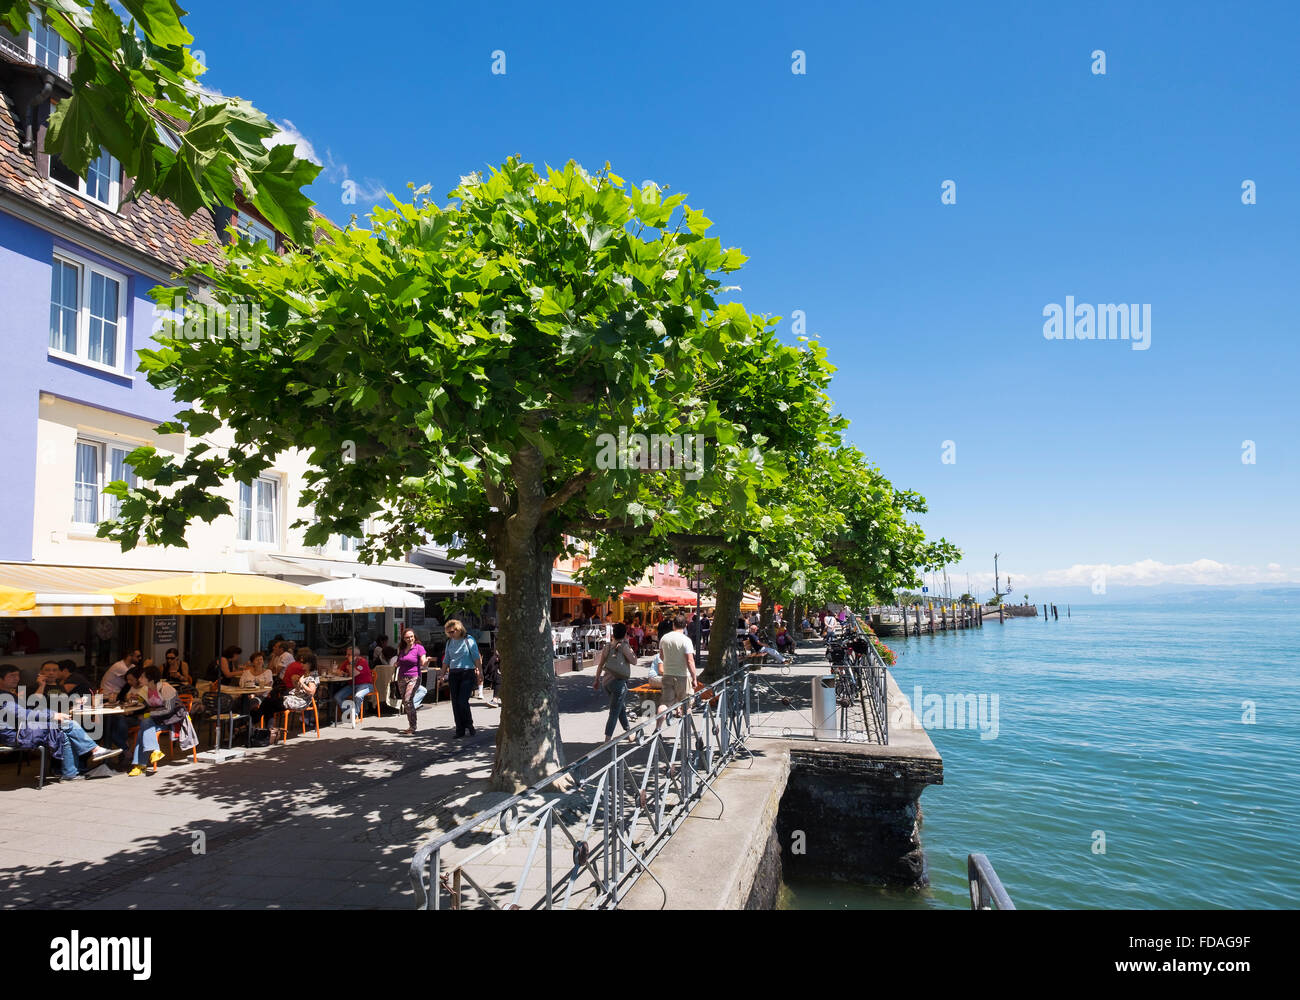 Promenade, Meersburg on Lake Constance, Bodenseekreis, Upper Swabia, Baden-Württemberg, Germany Stock Photo